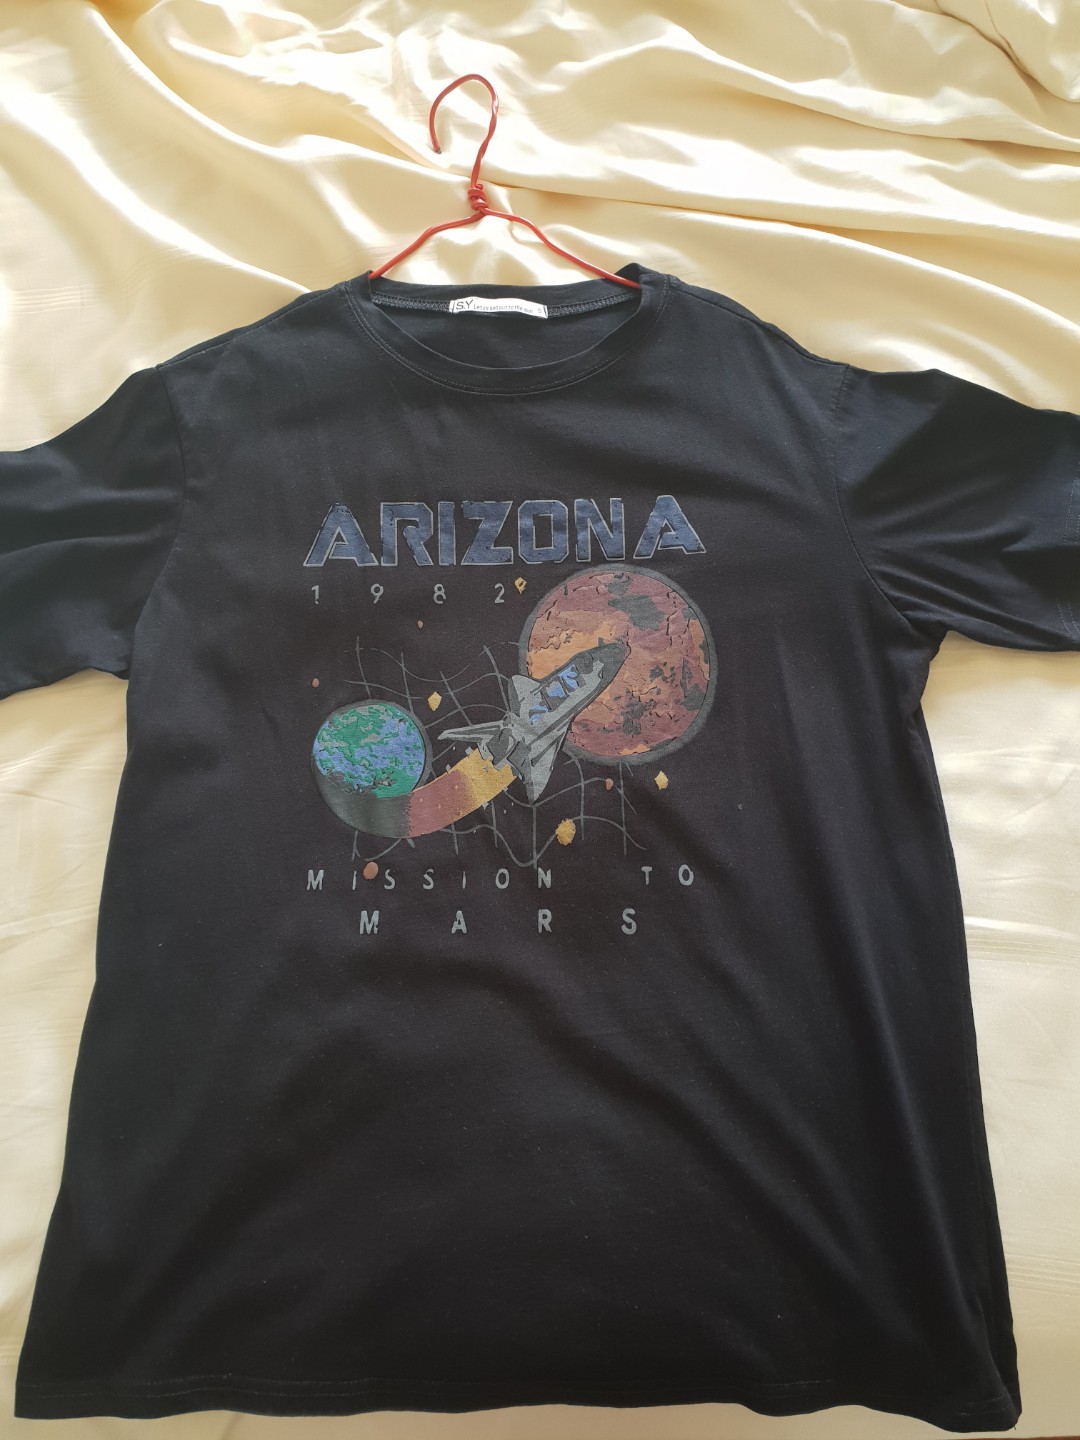 arizona tee shirts